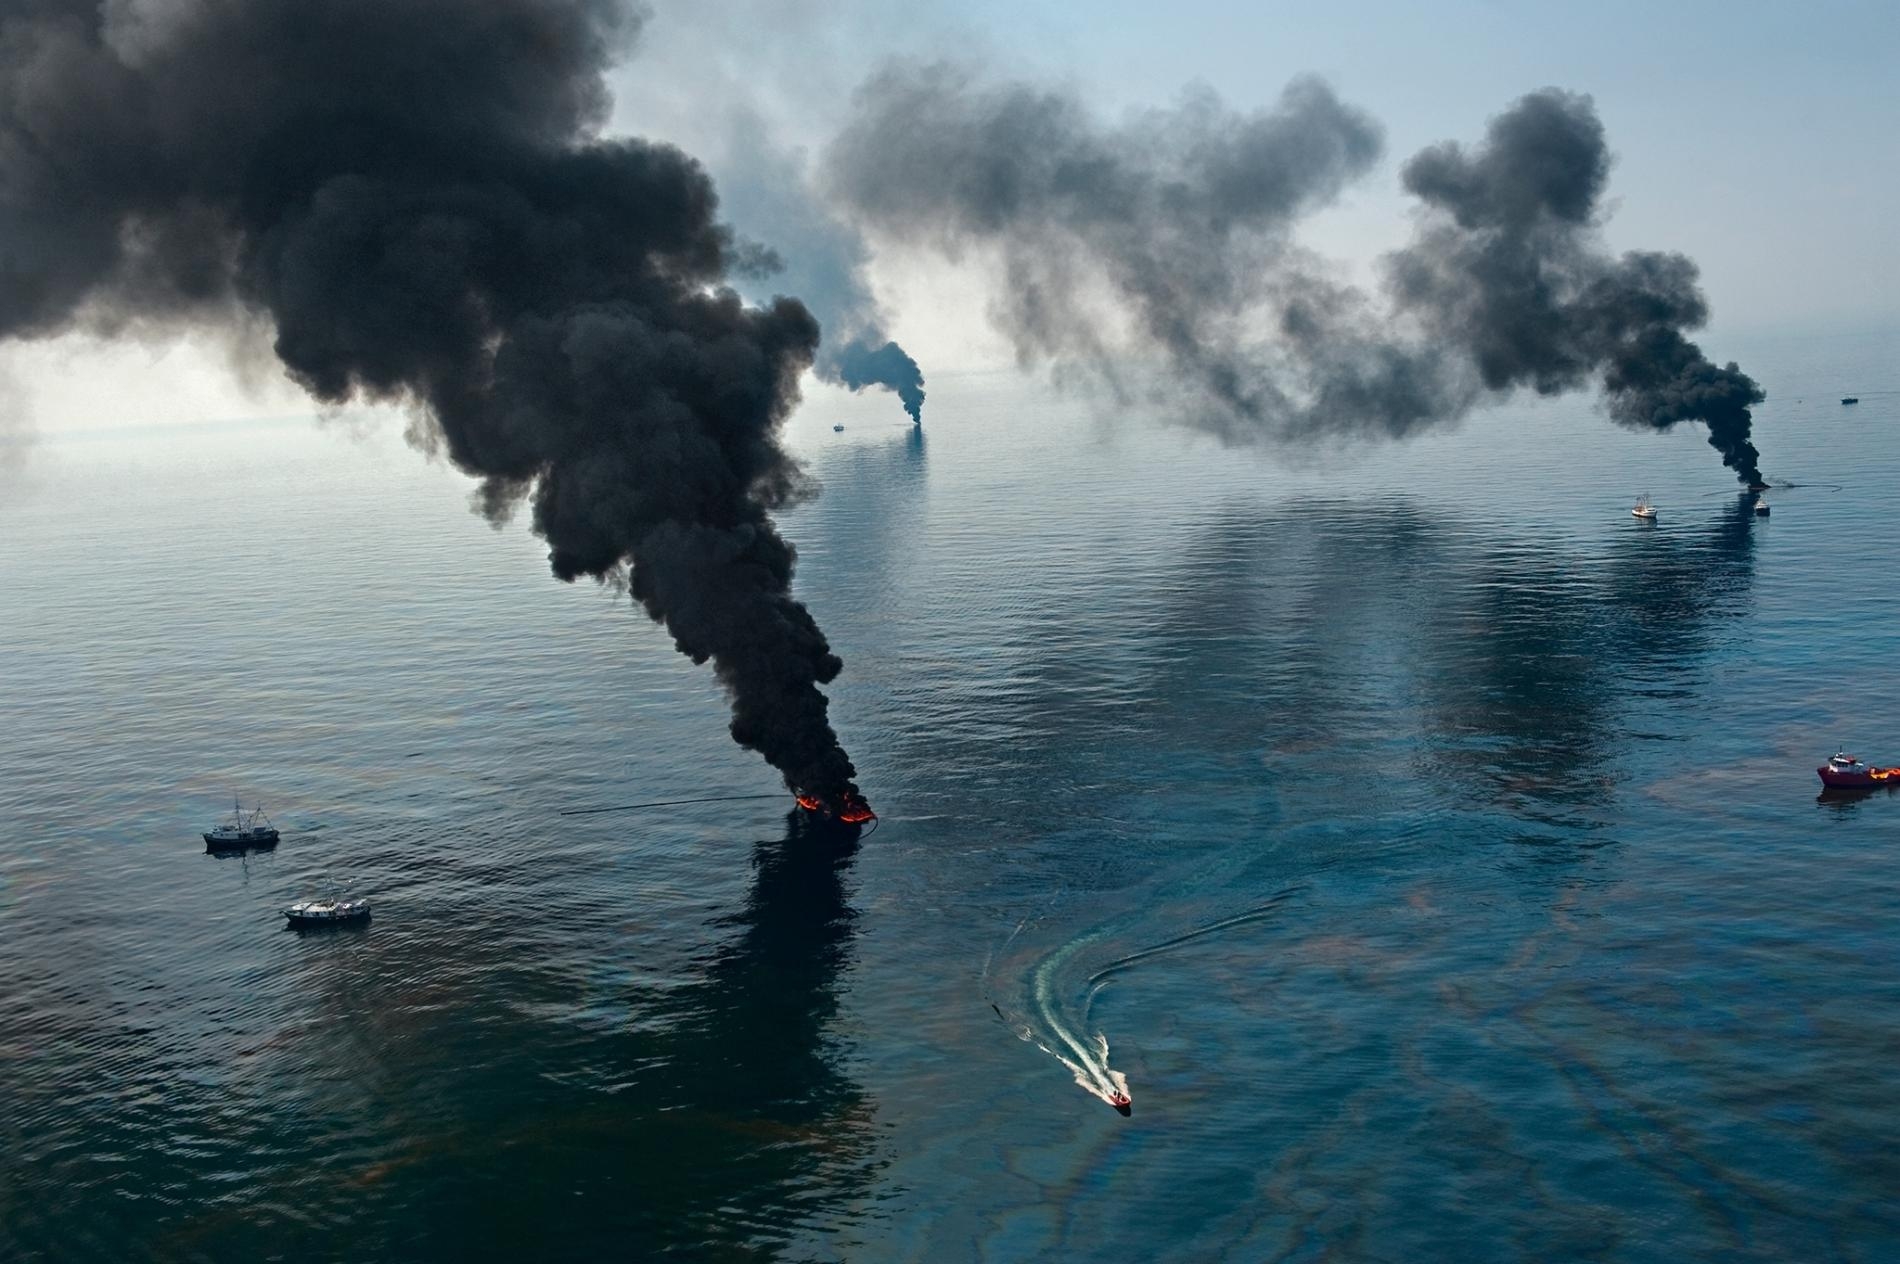 2010年4月深水地平線漏油事件後的墨西哥灣，煙霧從被清除人員點燃的表面油污中升起。PHOTOGRAPH BY JOEL SARTORE, NAT GEO IMAGE COLLECTION